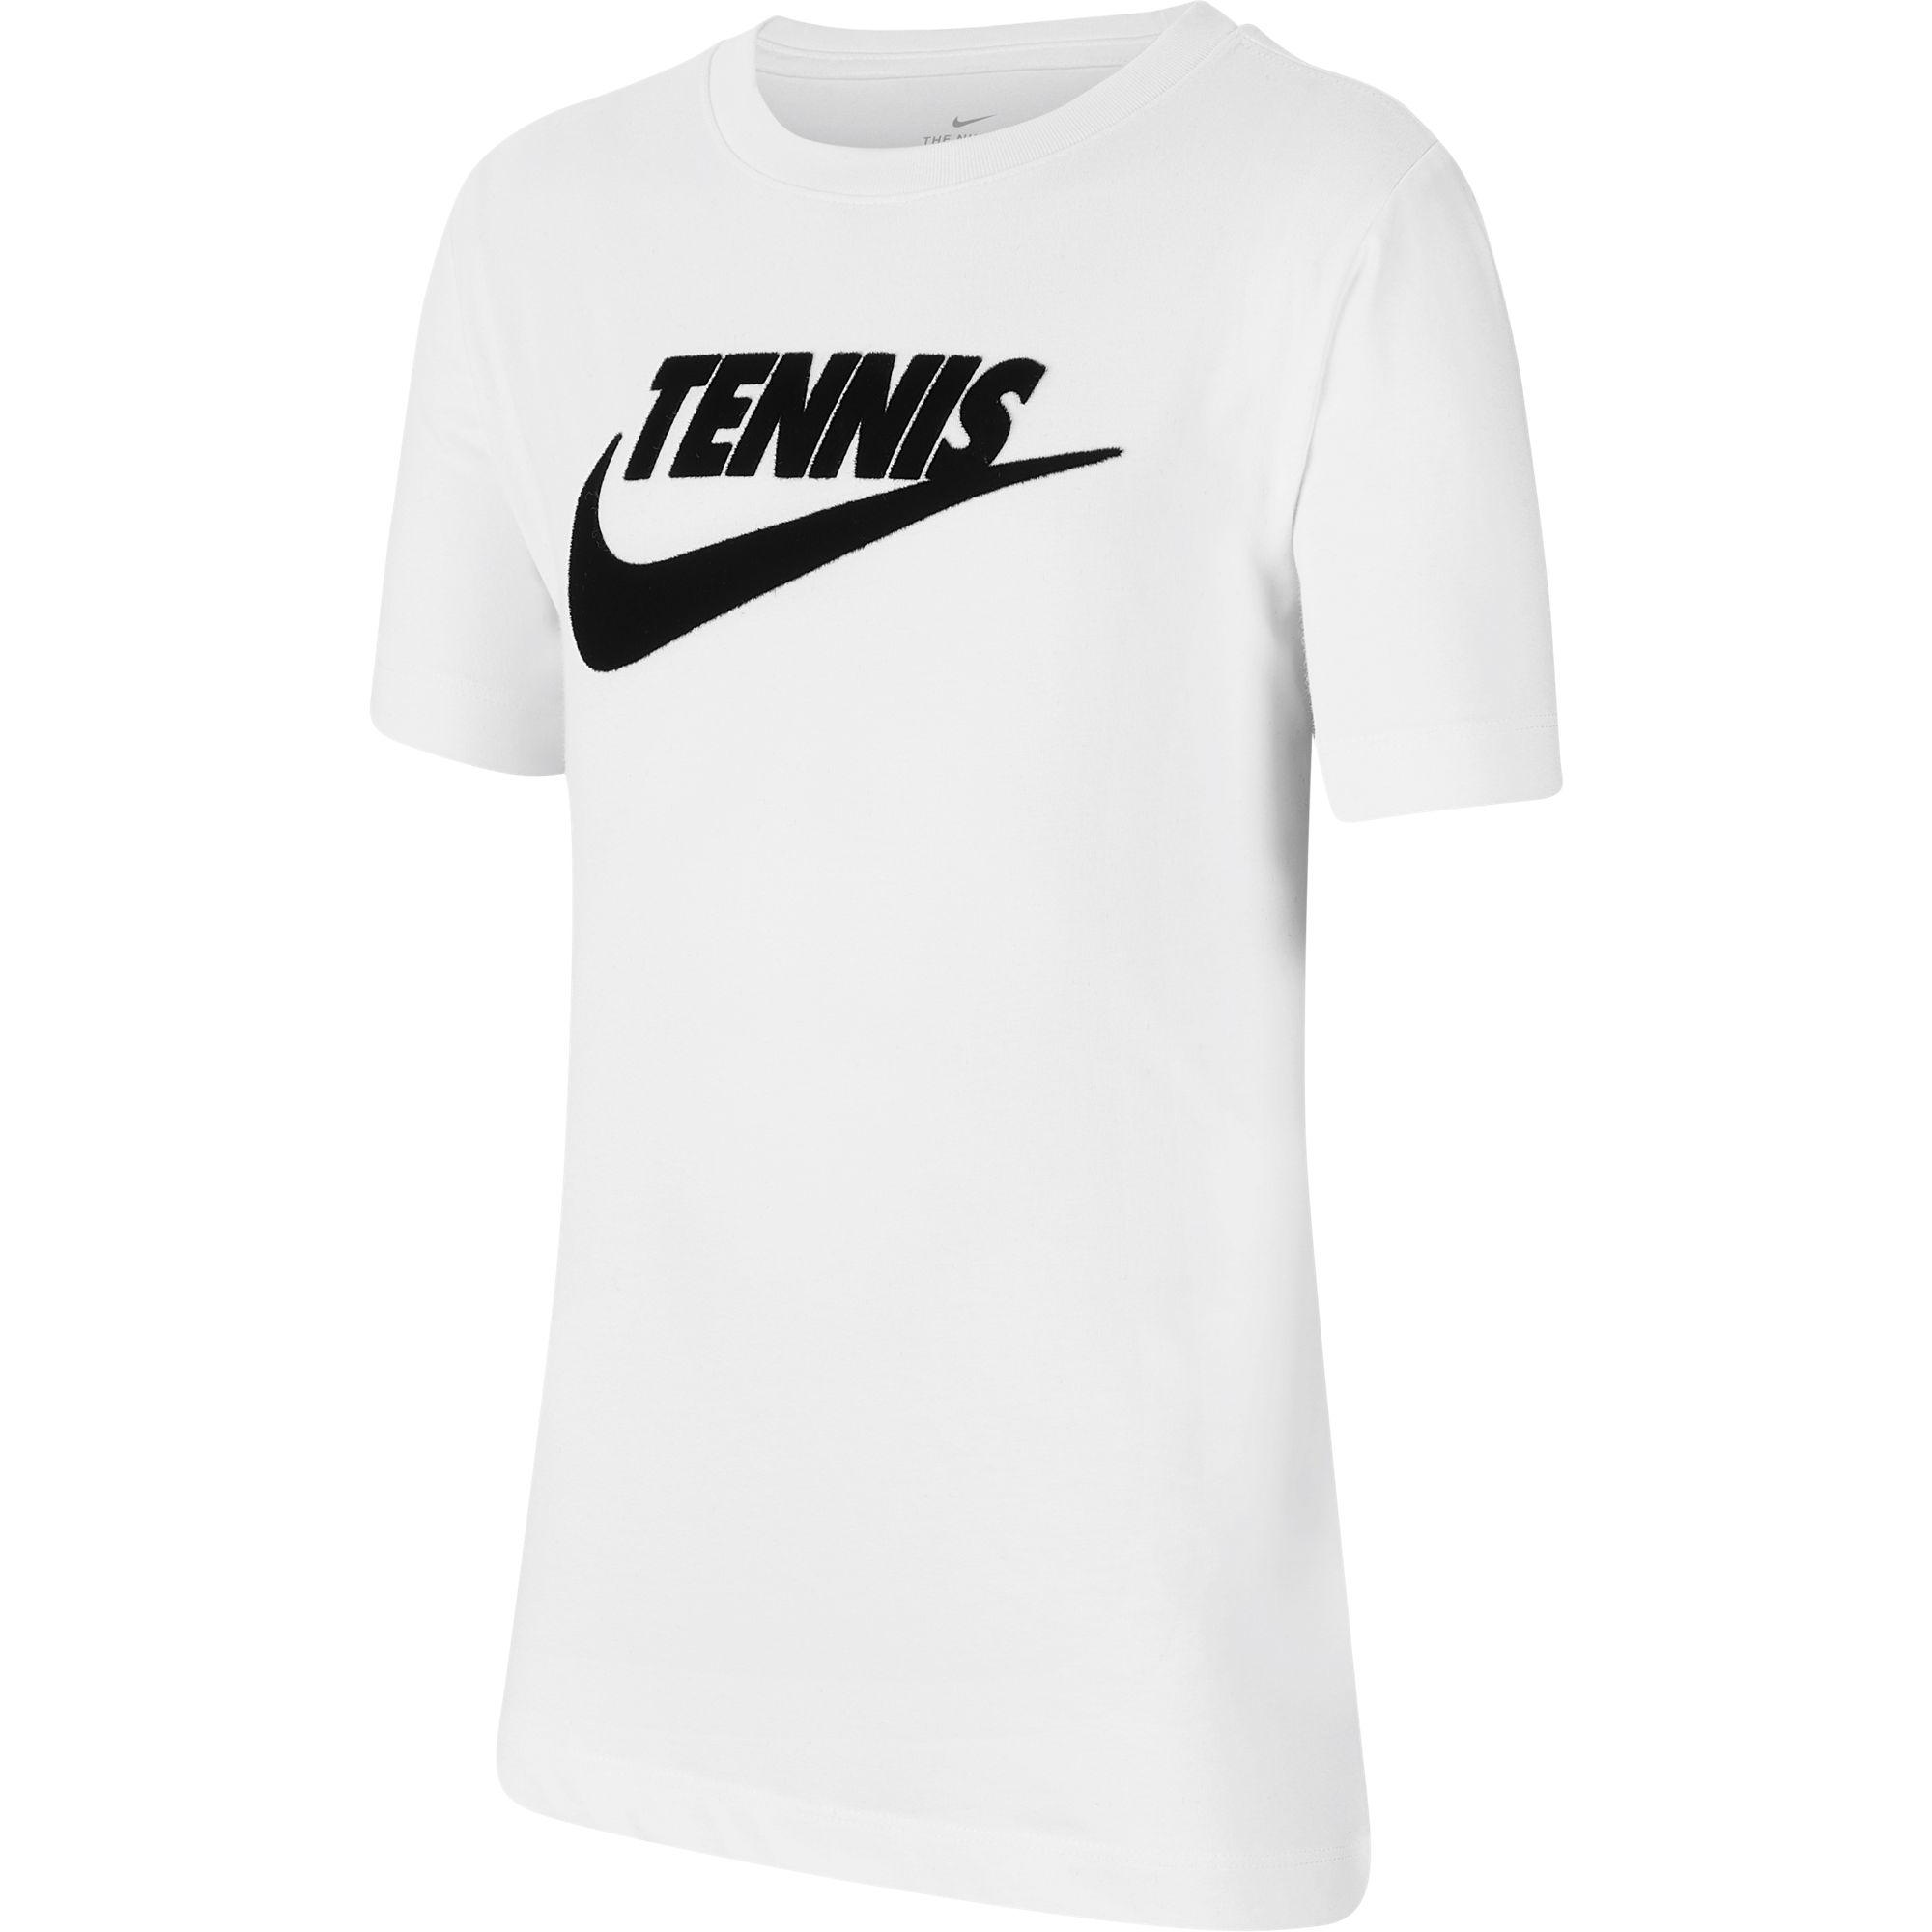 Nike Boys Graphic Tennis T-Shirt - White - Tennisnuts.com